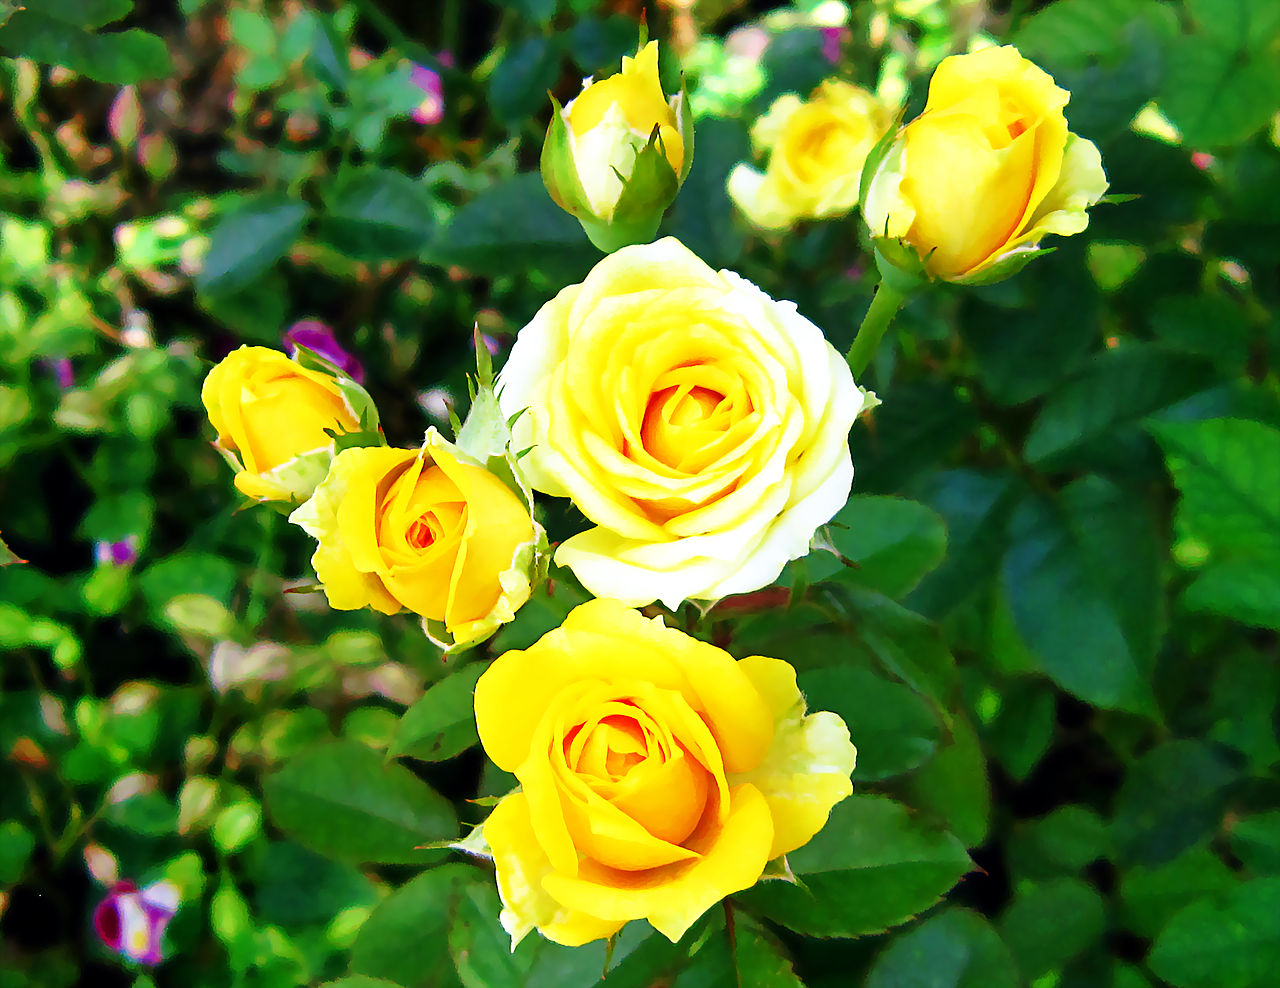 Hoa hồng vàng là một sự lựa chọn hoàn hảo cho những dịp đặc biệt. Màu sắc đặc trưng của loại hoa này mang đến niềm vui và sự lịch sự. Hãy cùng tìm hiểu về vẻ đẹp của hoa hồng vàng trong bức tranh này.